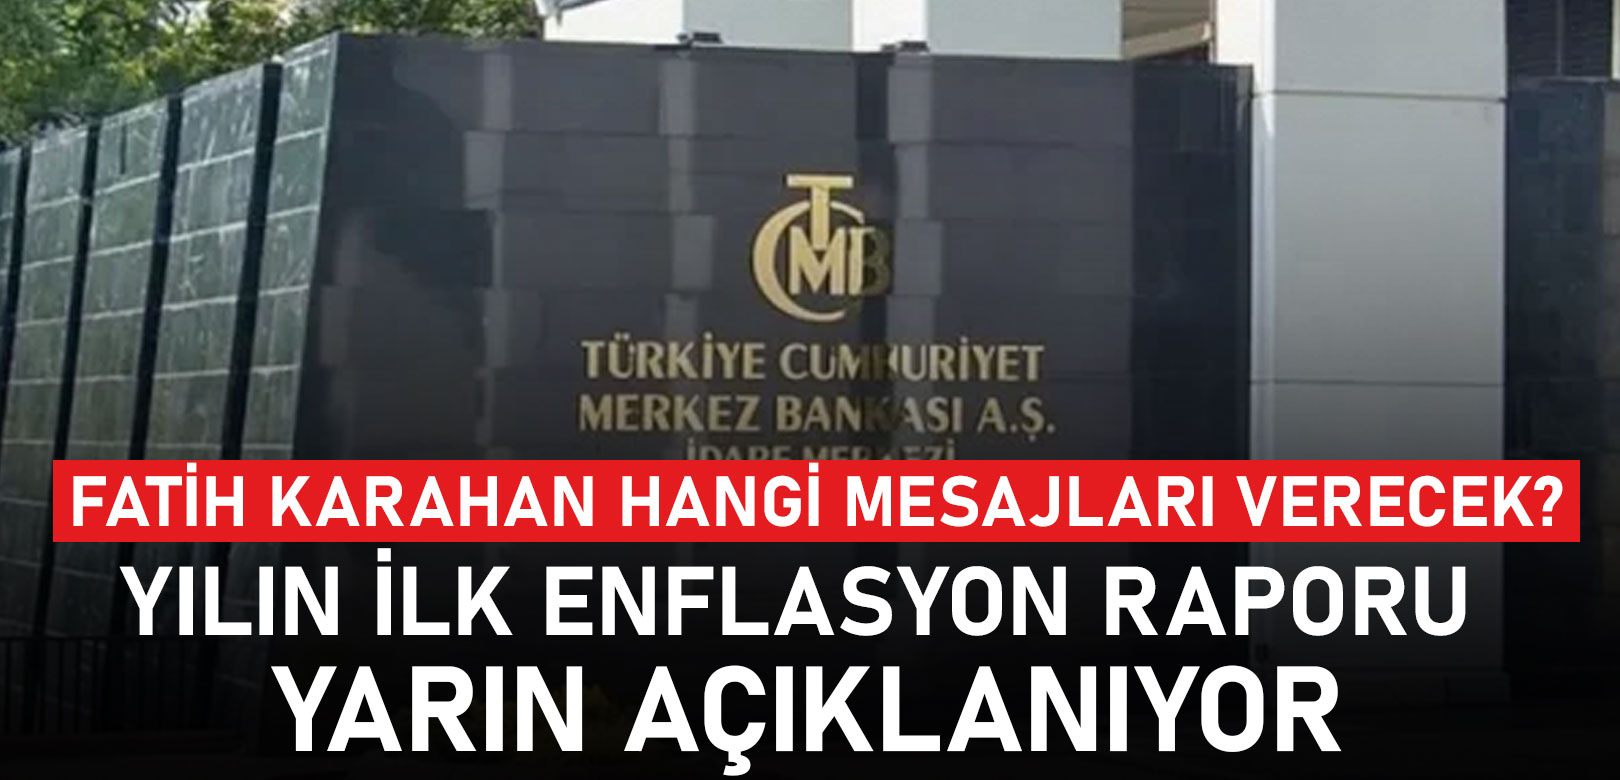 Hafize Gaye Erkan'ın istifasının ardından yarın ilk enflasyon raporu açıklanacak